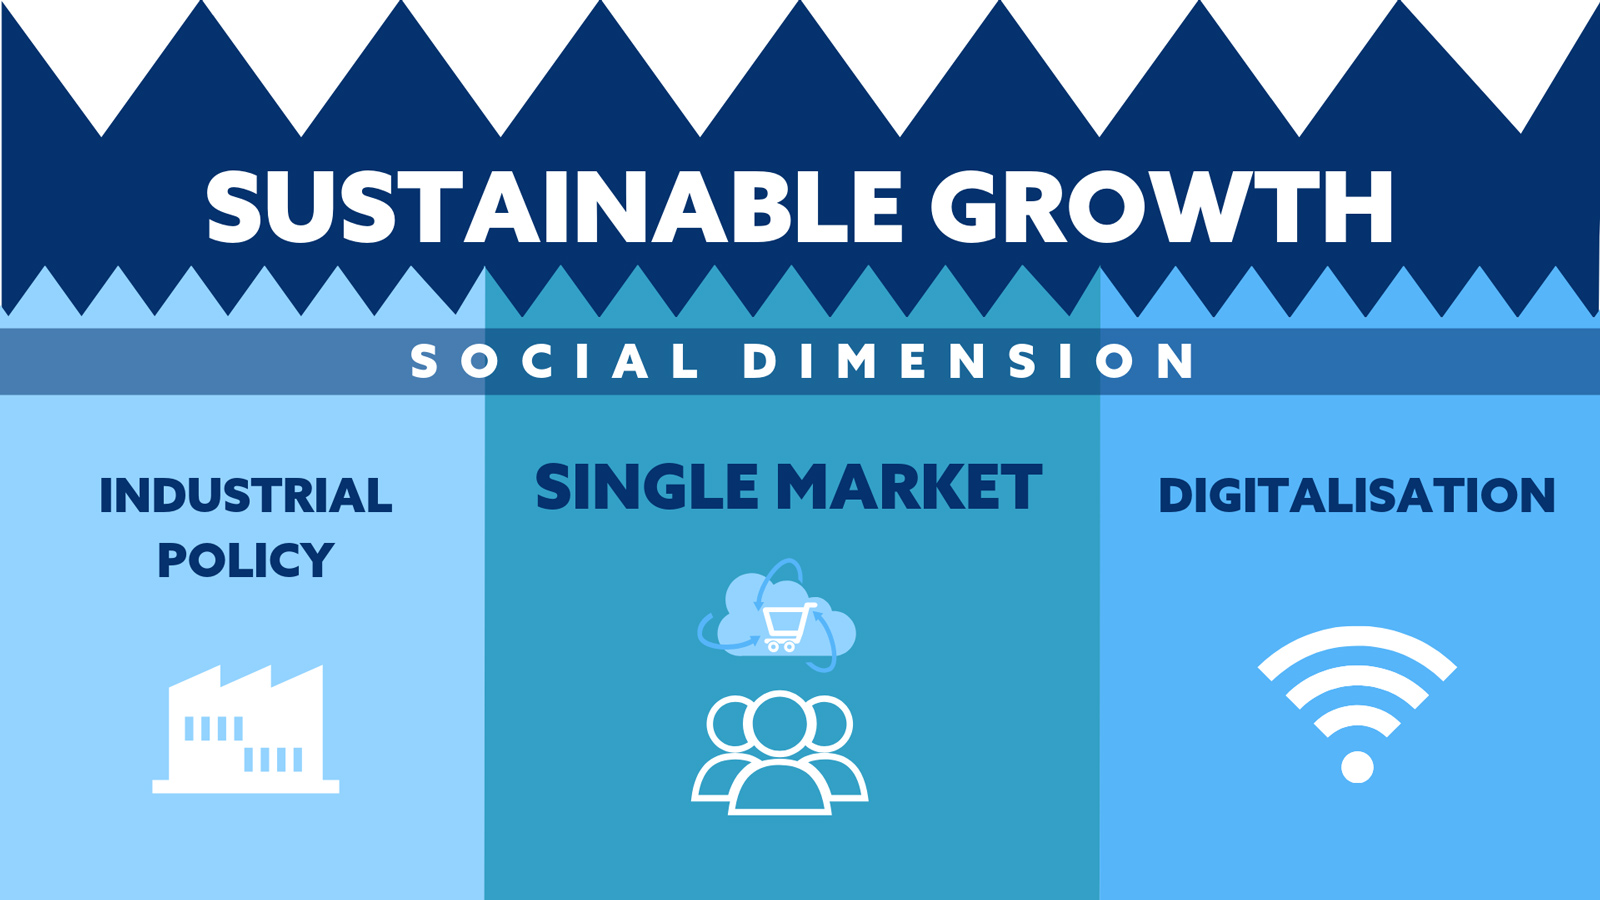 Cette image montre les composantes de la croissance durable: politique industrielle, marché unique, passage au numérique.